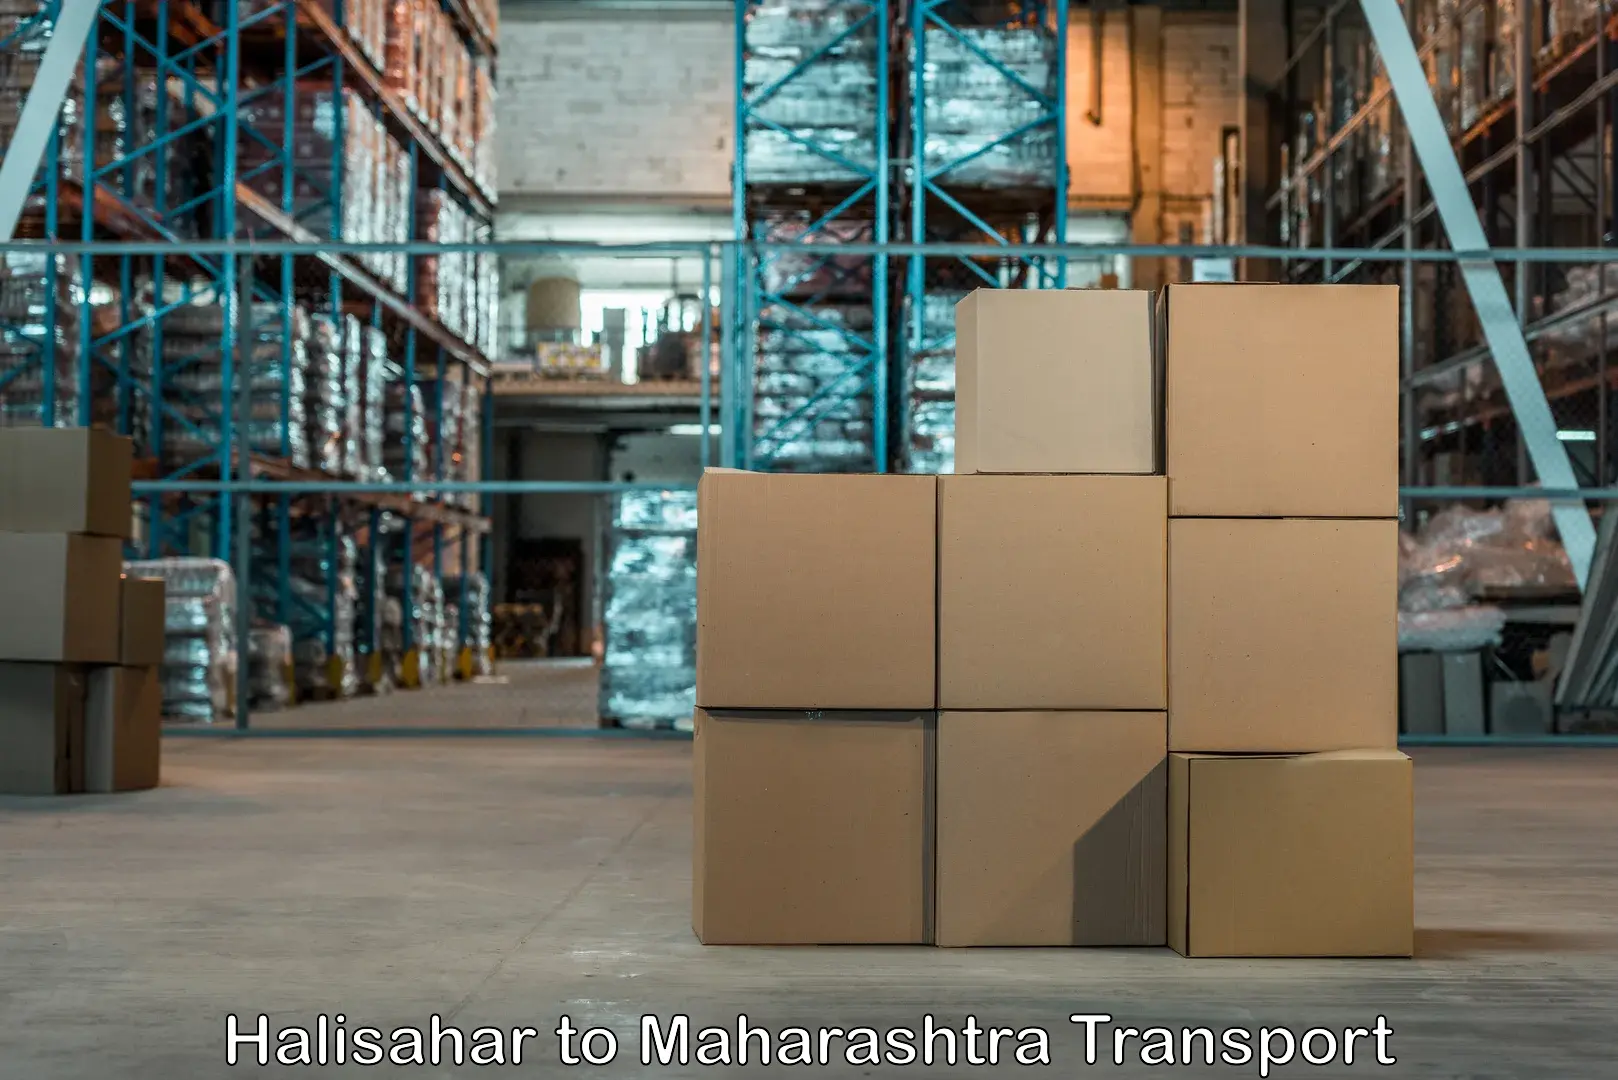 Nearest transport service in Halisahar to Maharashtra